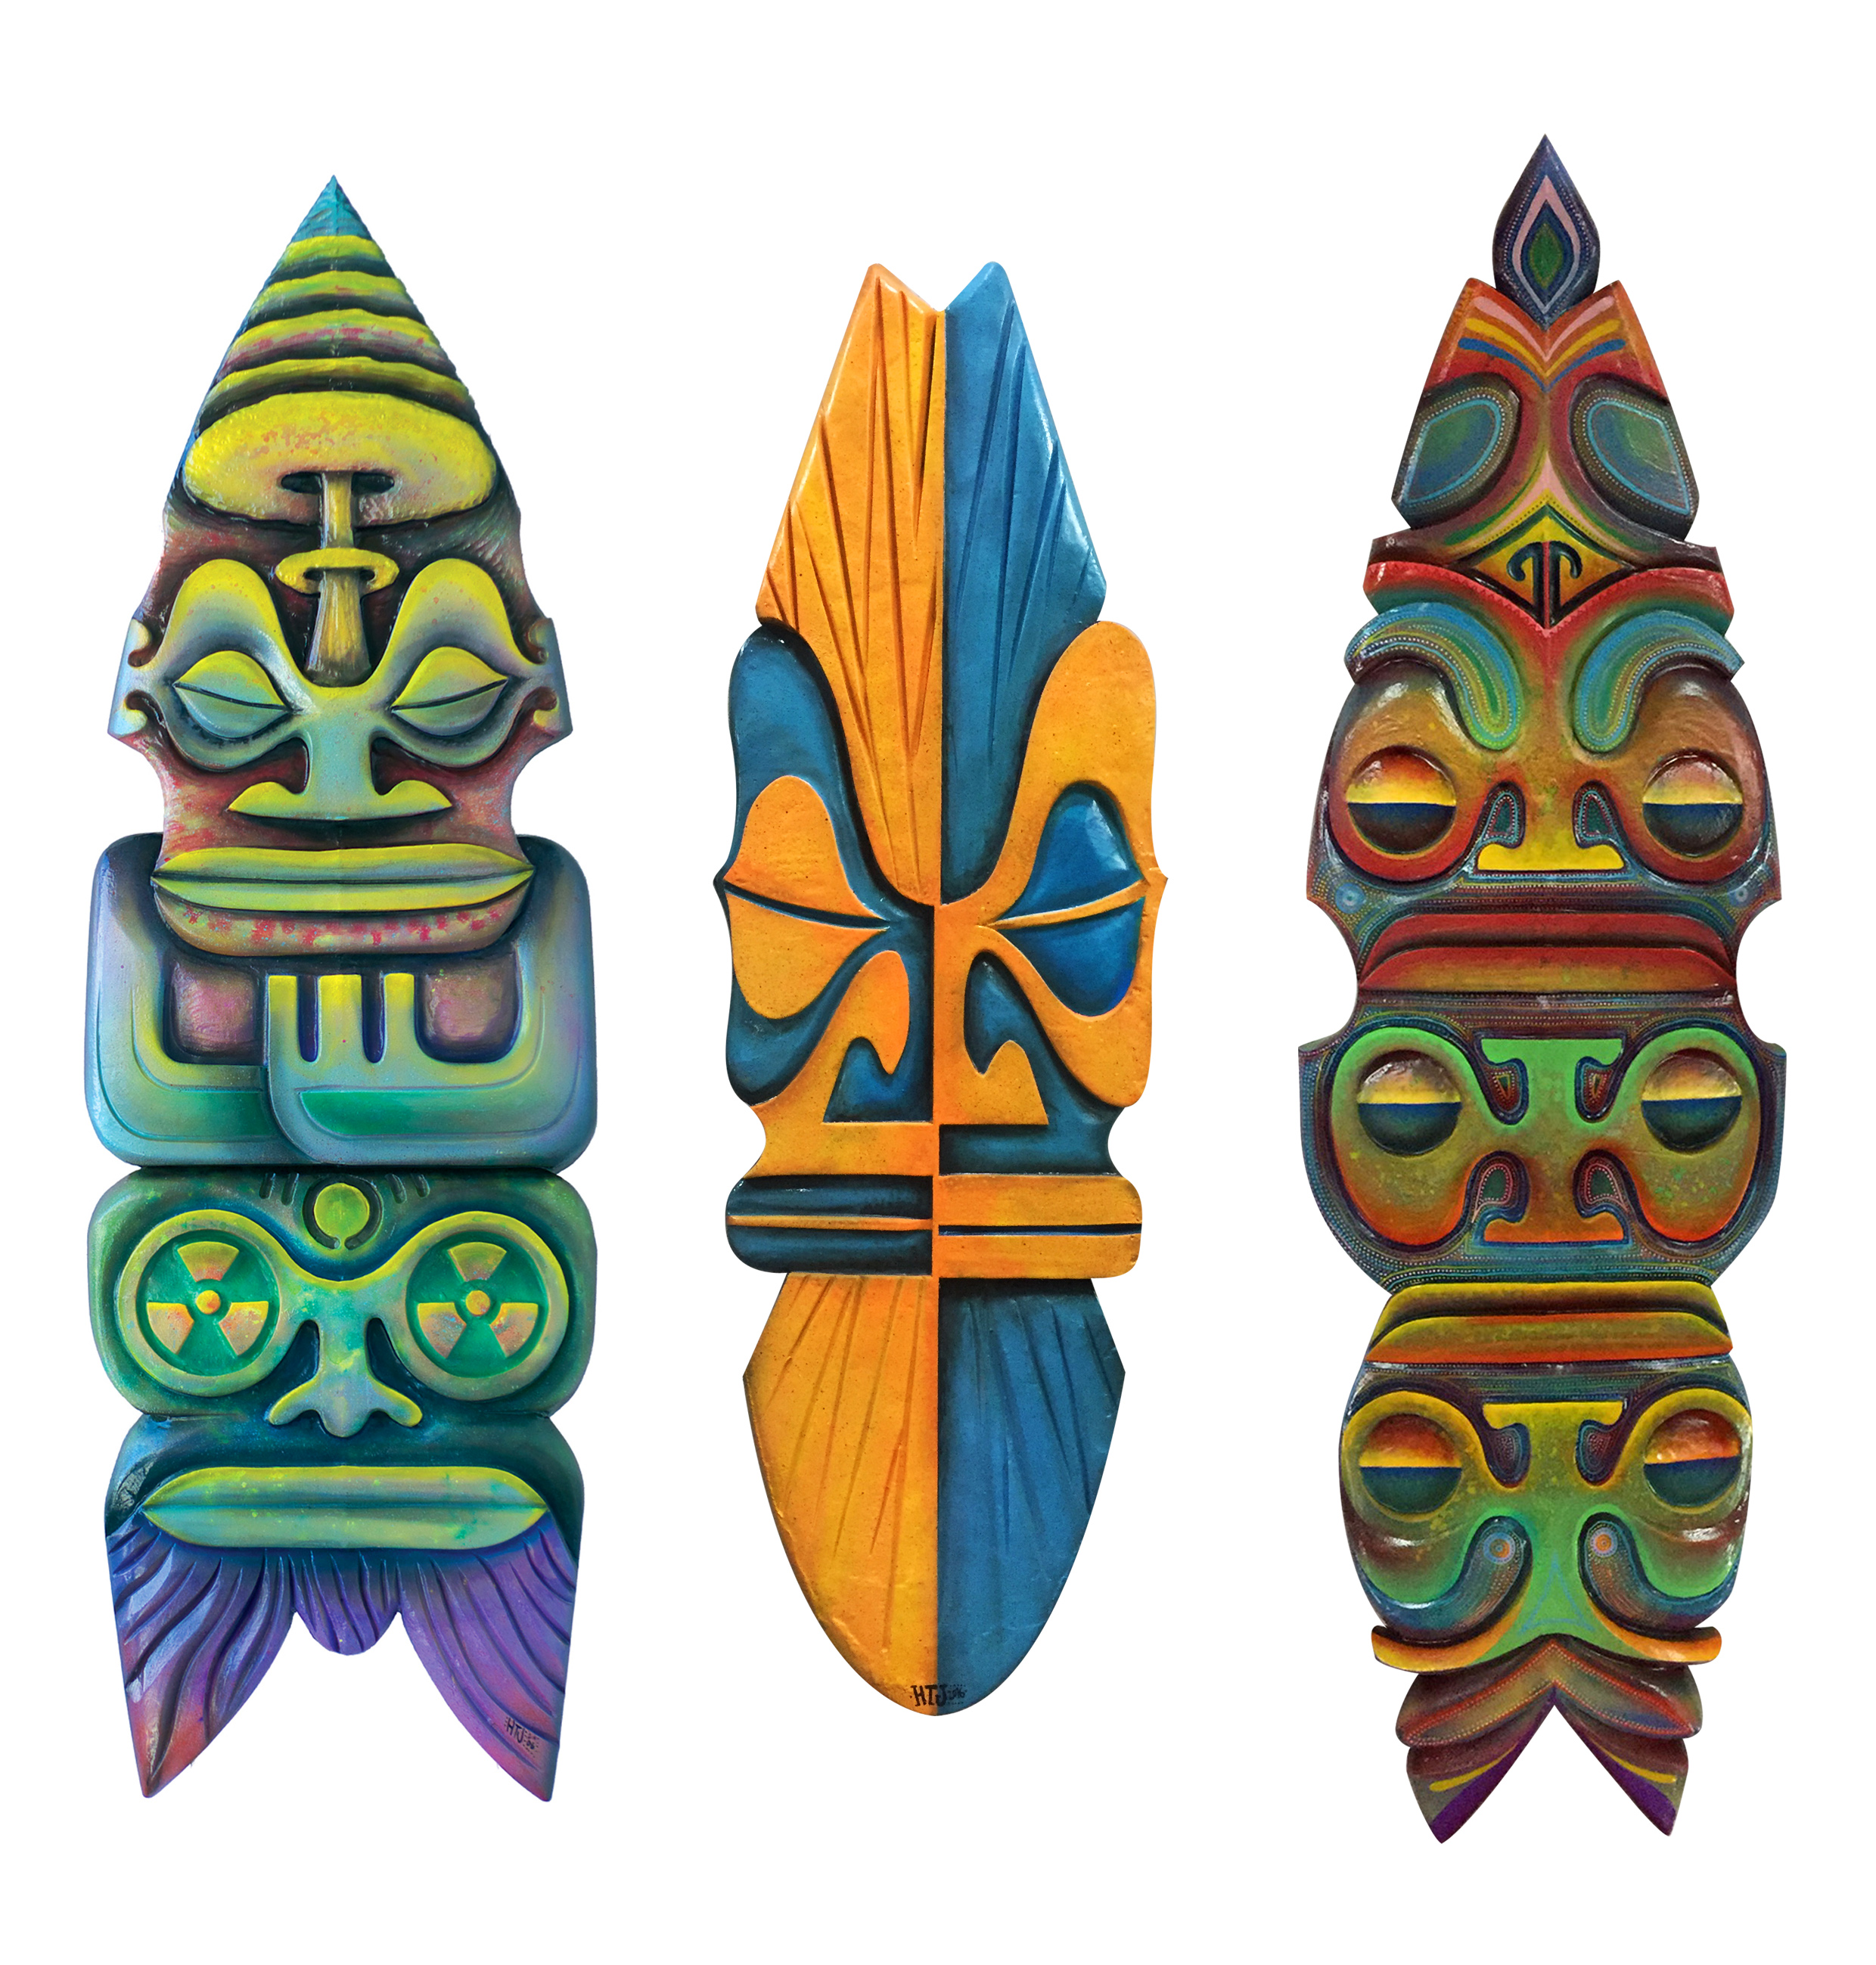 Les planches de surf sculptées de HTJ sont devenues sa "marque de fabrique".